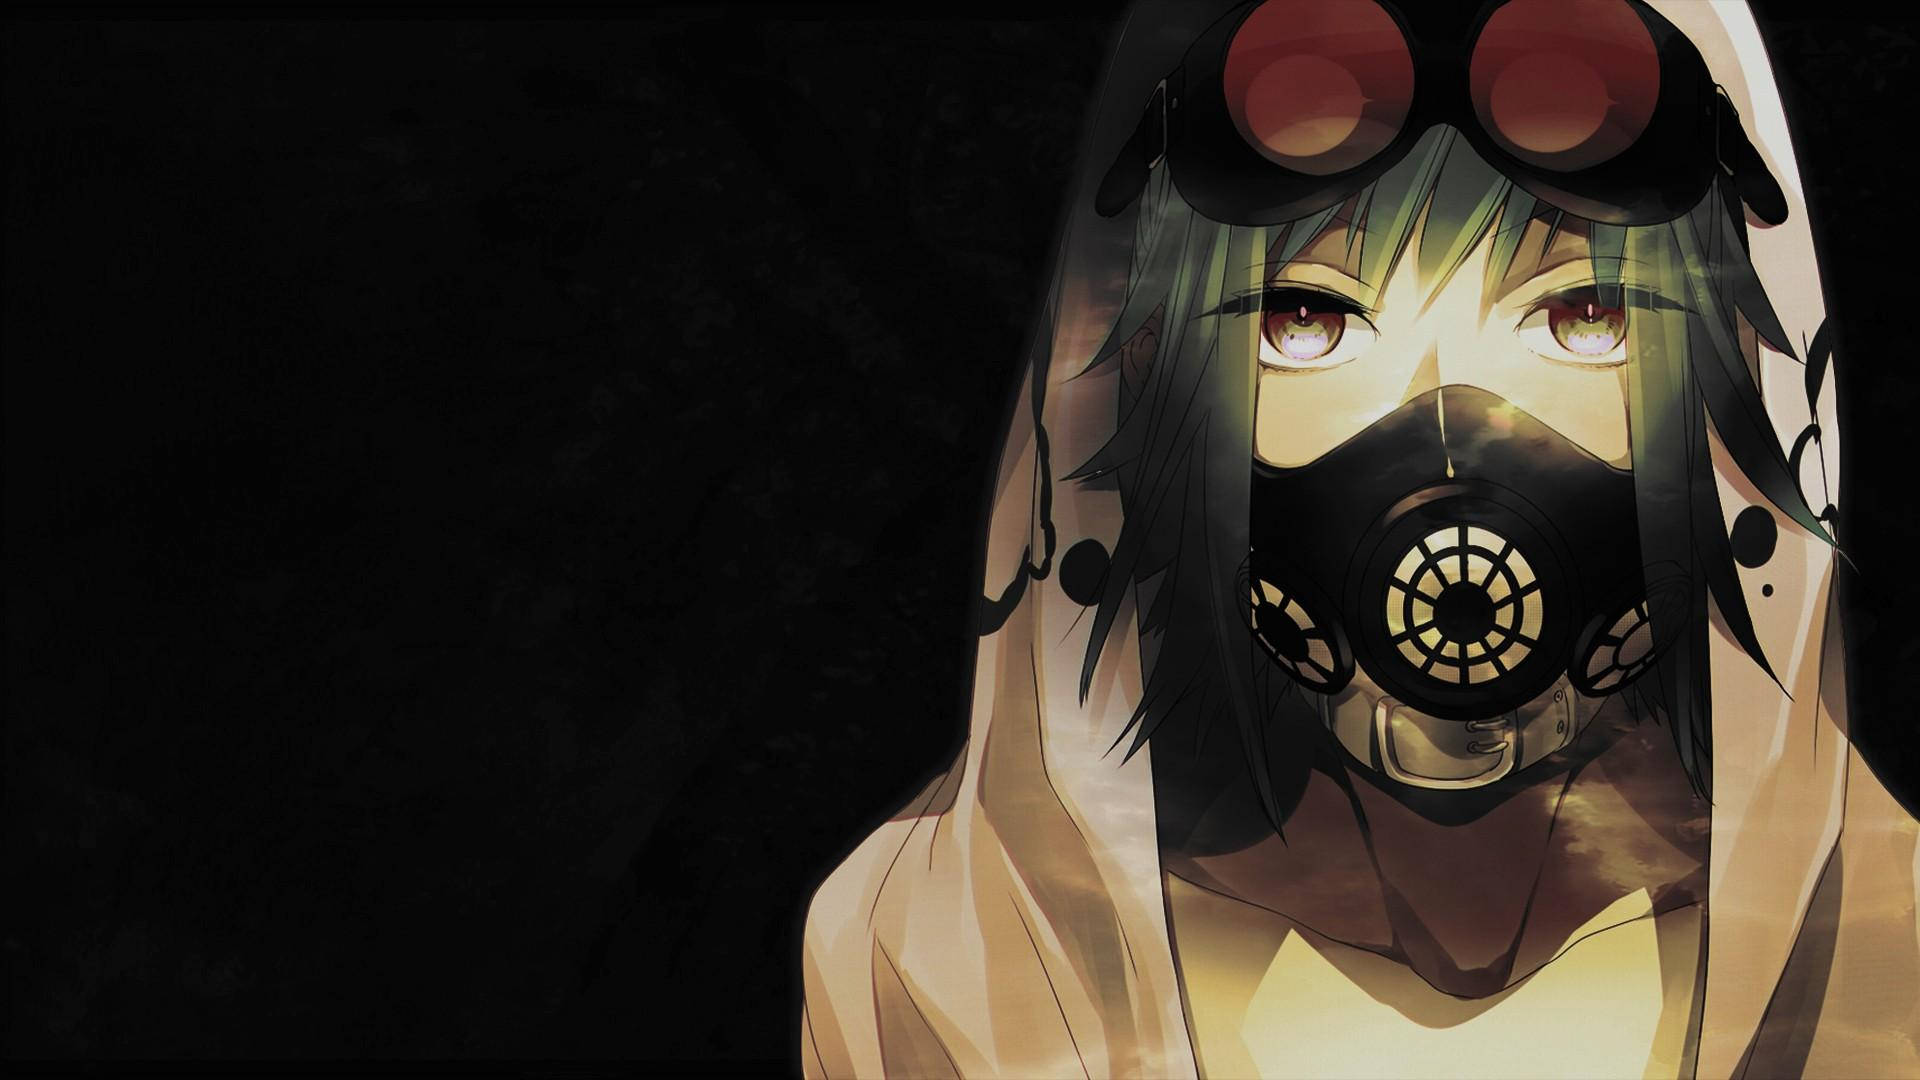 Digital Anime Girl With Gas Mask